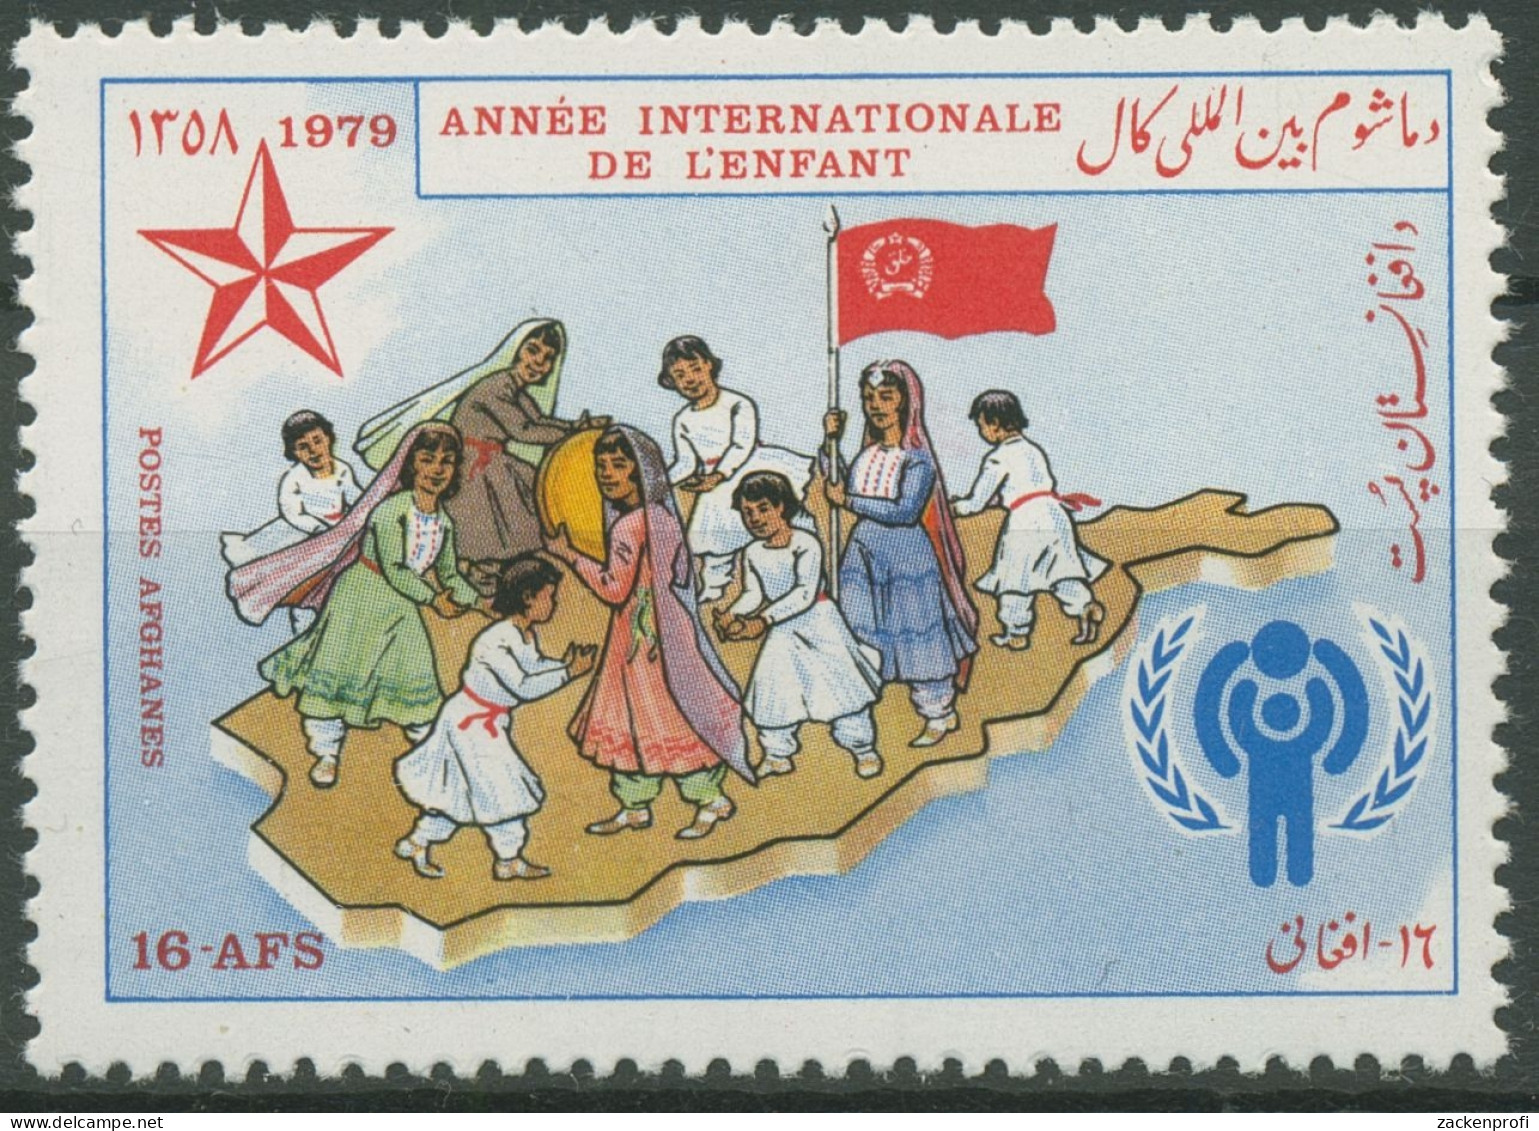 Afghanistan 1979 Jahr Des Kindes 1224 Postfrisch - Afghanistan